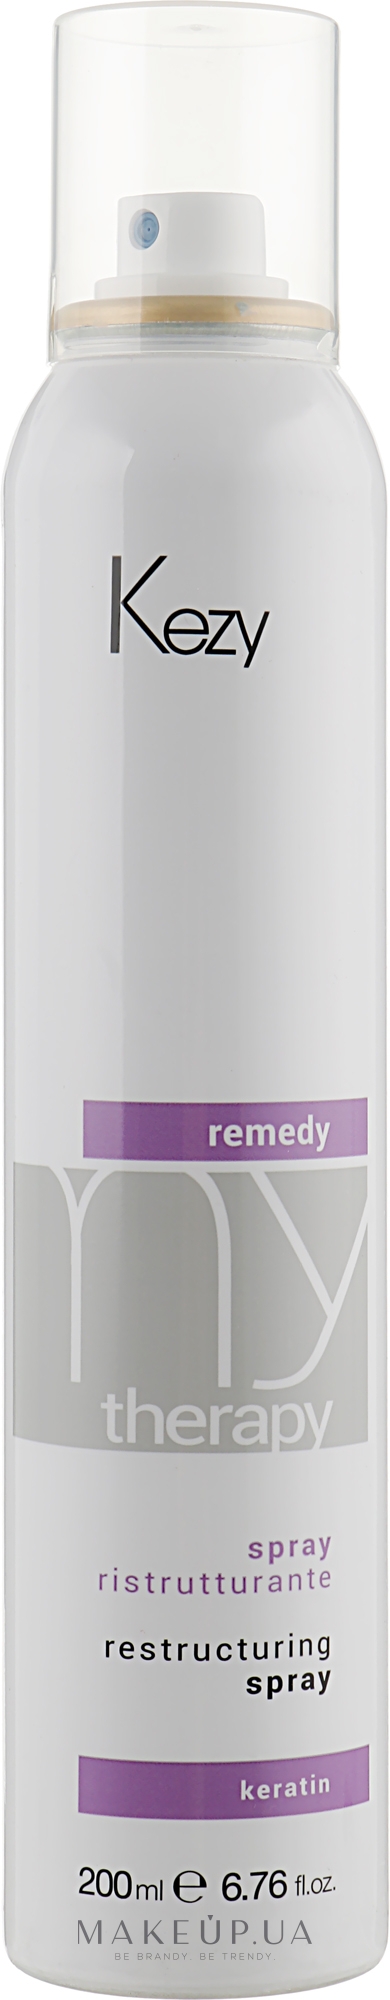 Восстанавливающий смывной спрей для волос - Kezy Remedy Restructuring Spray — фото 200ml